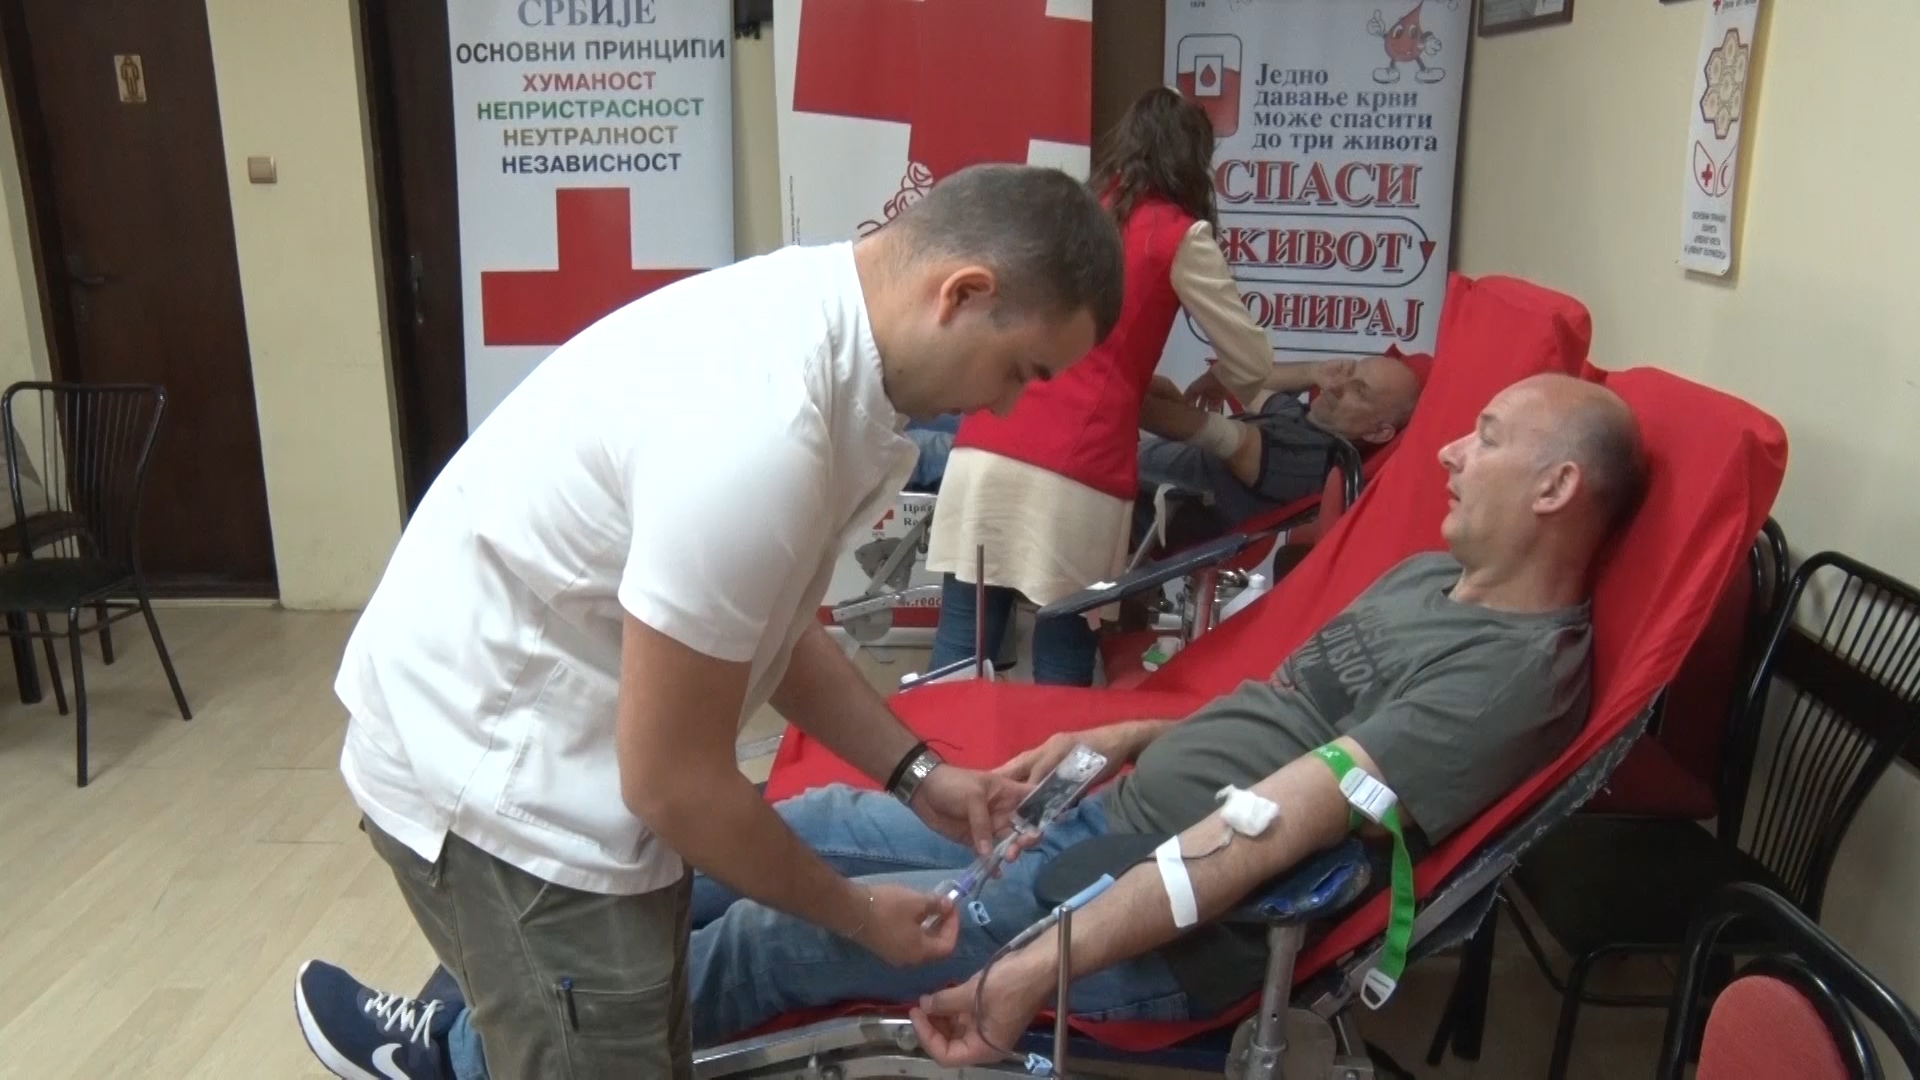 Akcija dobrovoljnog davanja krvi u paraćinskom Crvenom krstu